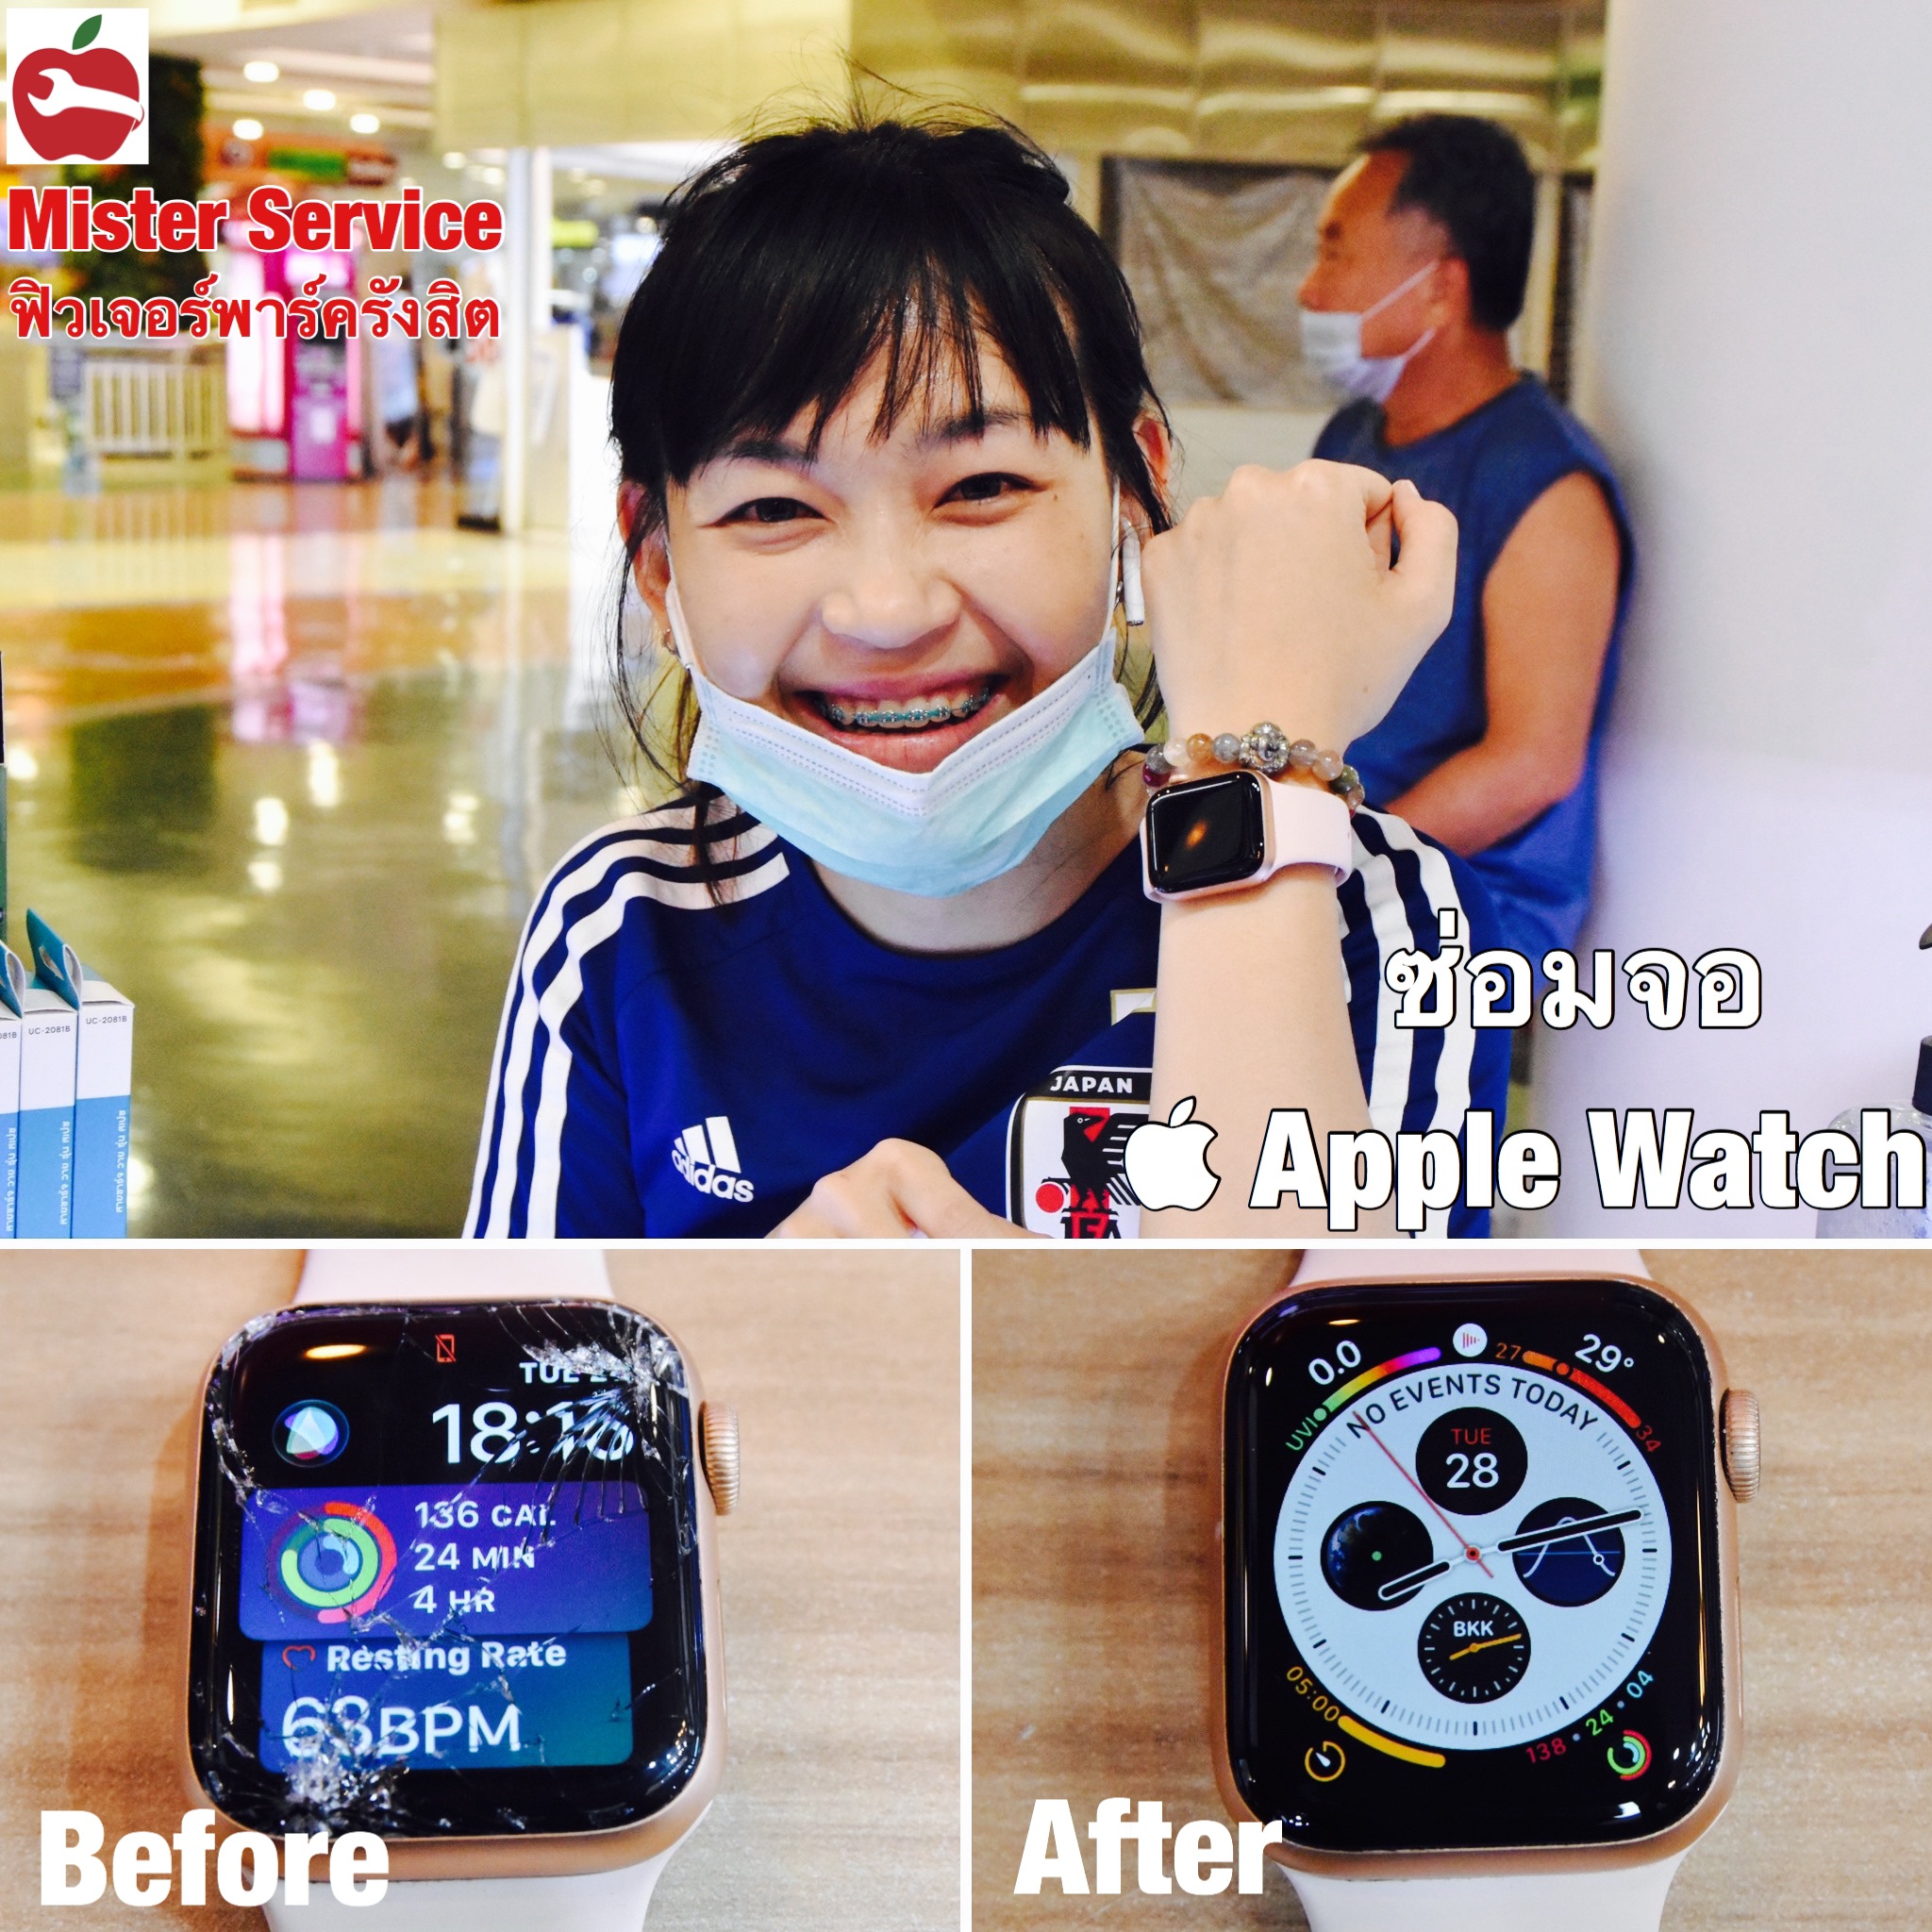 ซ่อม Apple Watch ตรัง